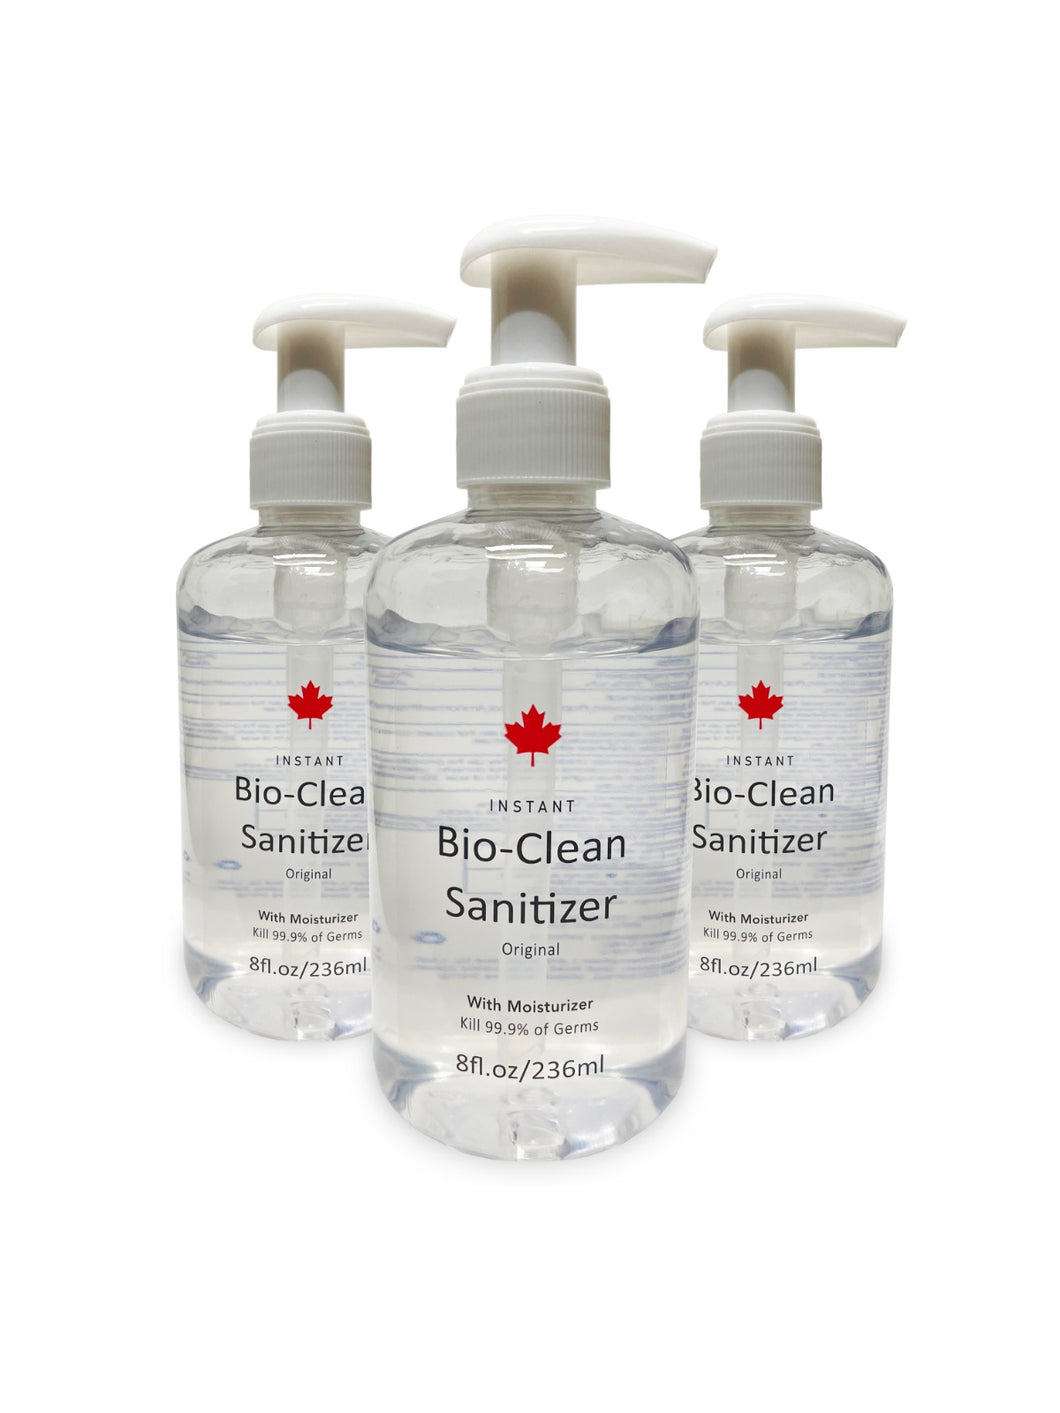 Bio-Clean Sanitizer with Moisturizer